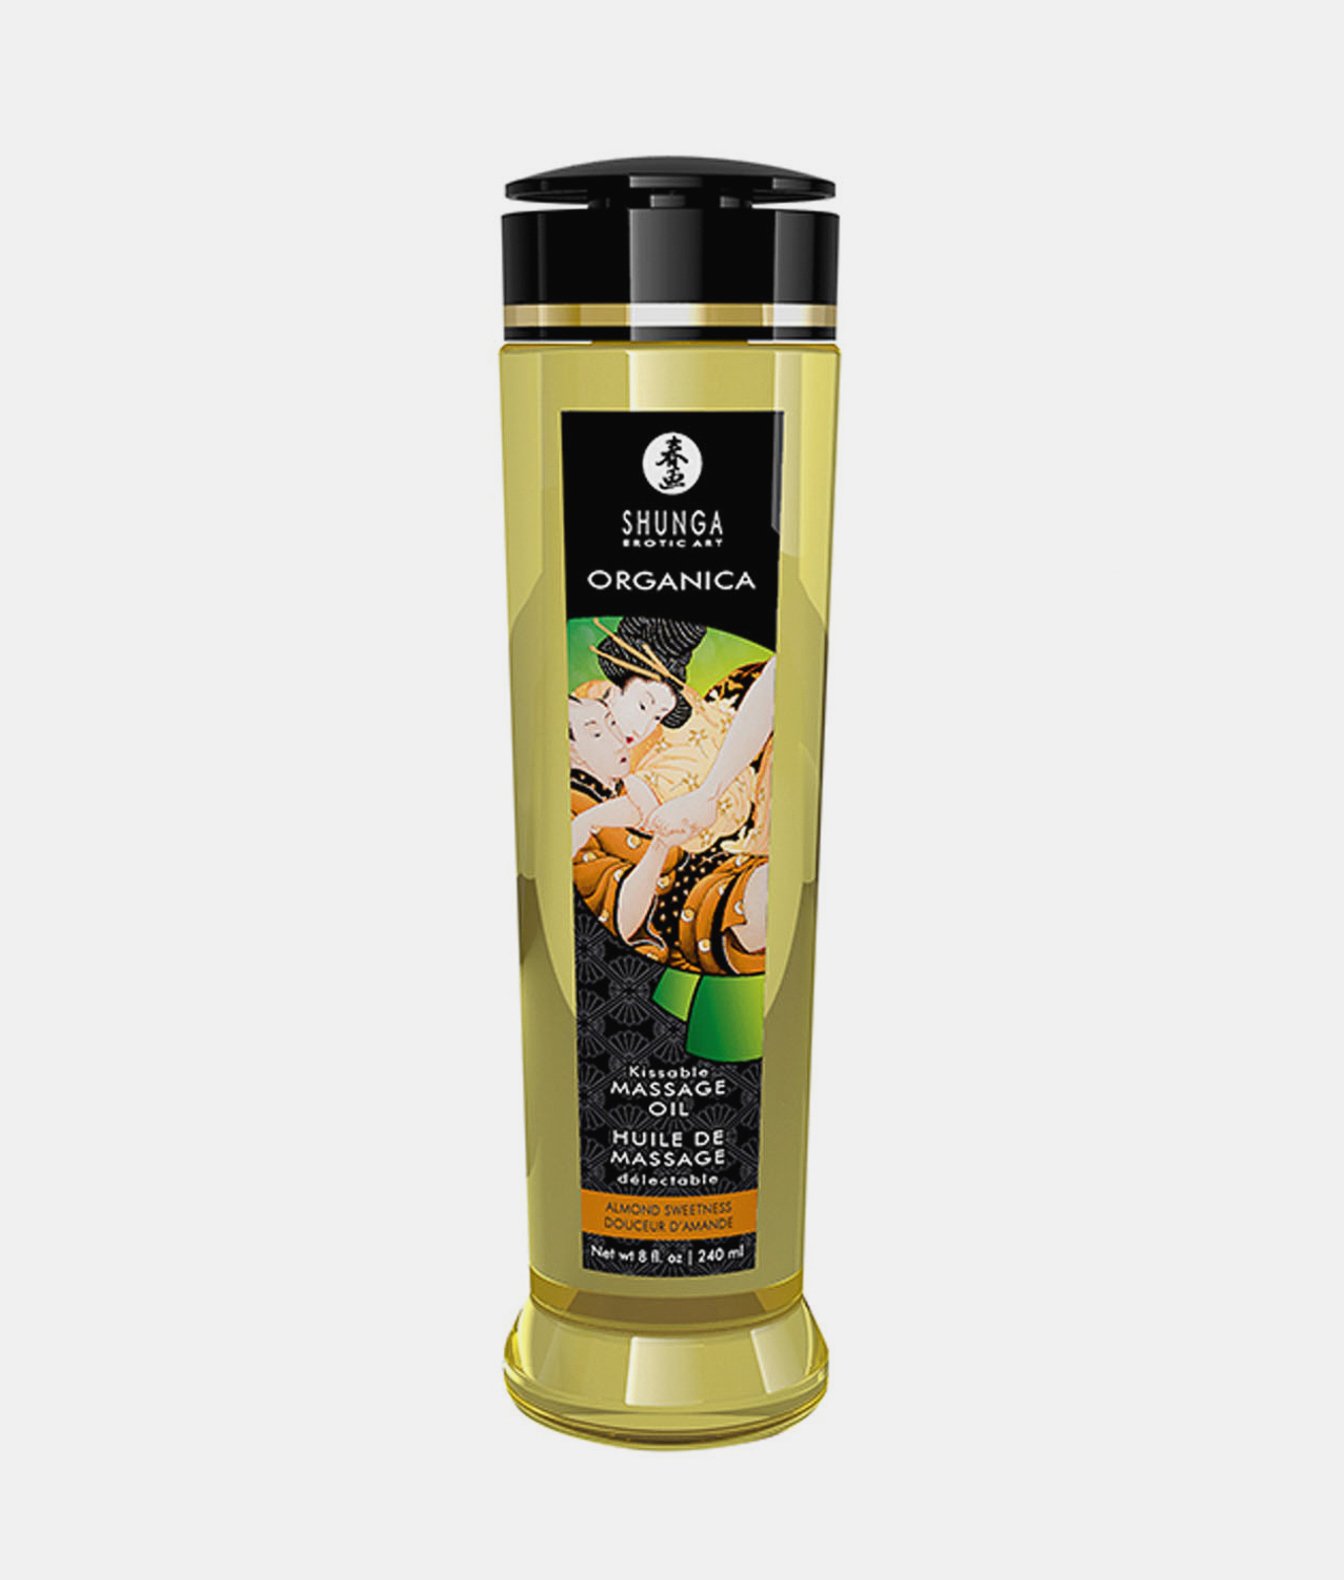 Shunga Natural Massage Oil Organica organiczny migdałowy olejek do masażu